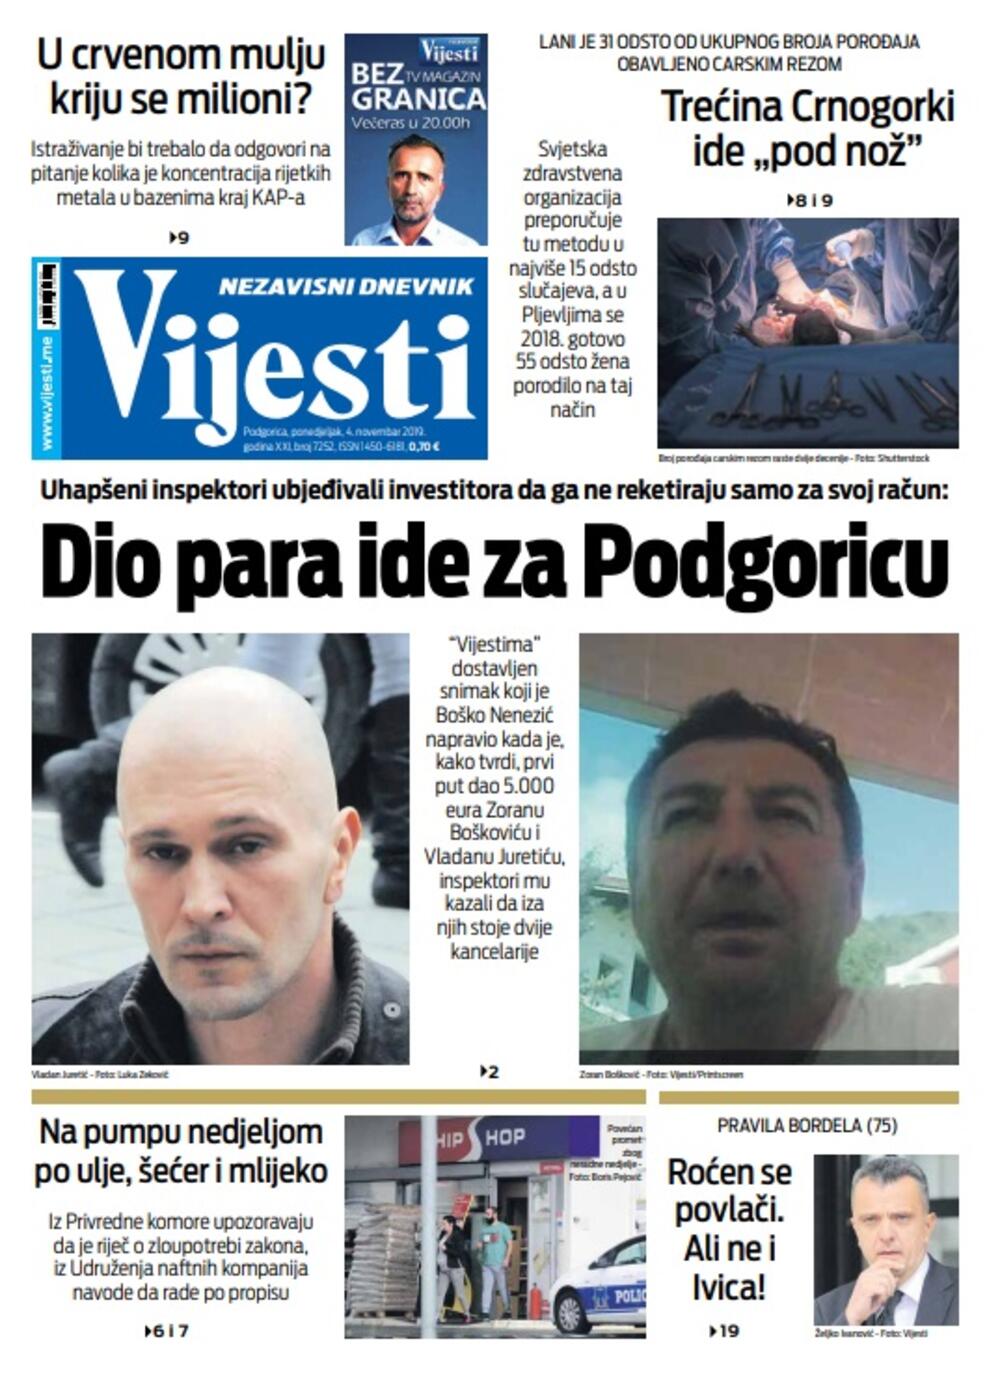 Naslovna strana "Vijesti" za 4. novembar 2019., Foto: Vijesti